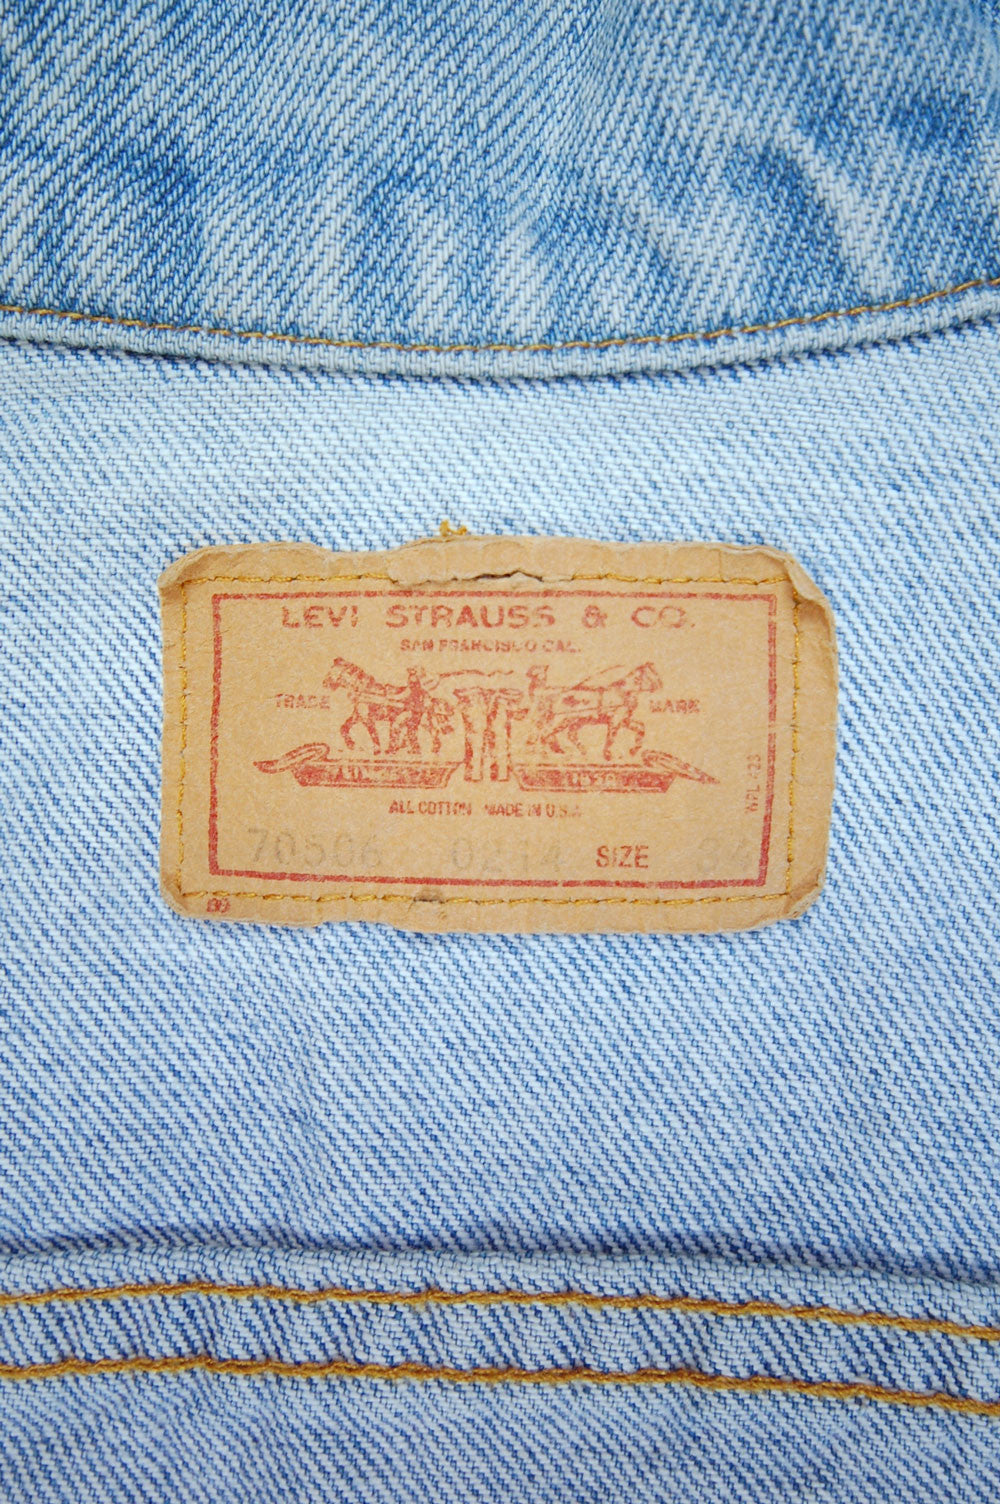 Vintage Levi's 4-Pocket USA Denim Trucker Jacket (JYJ-061)